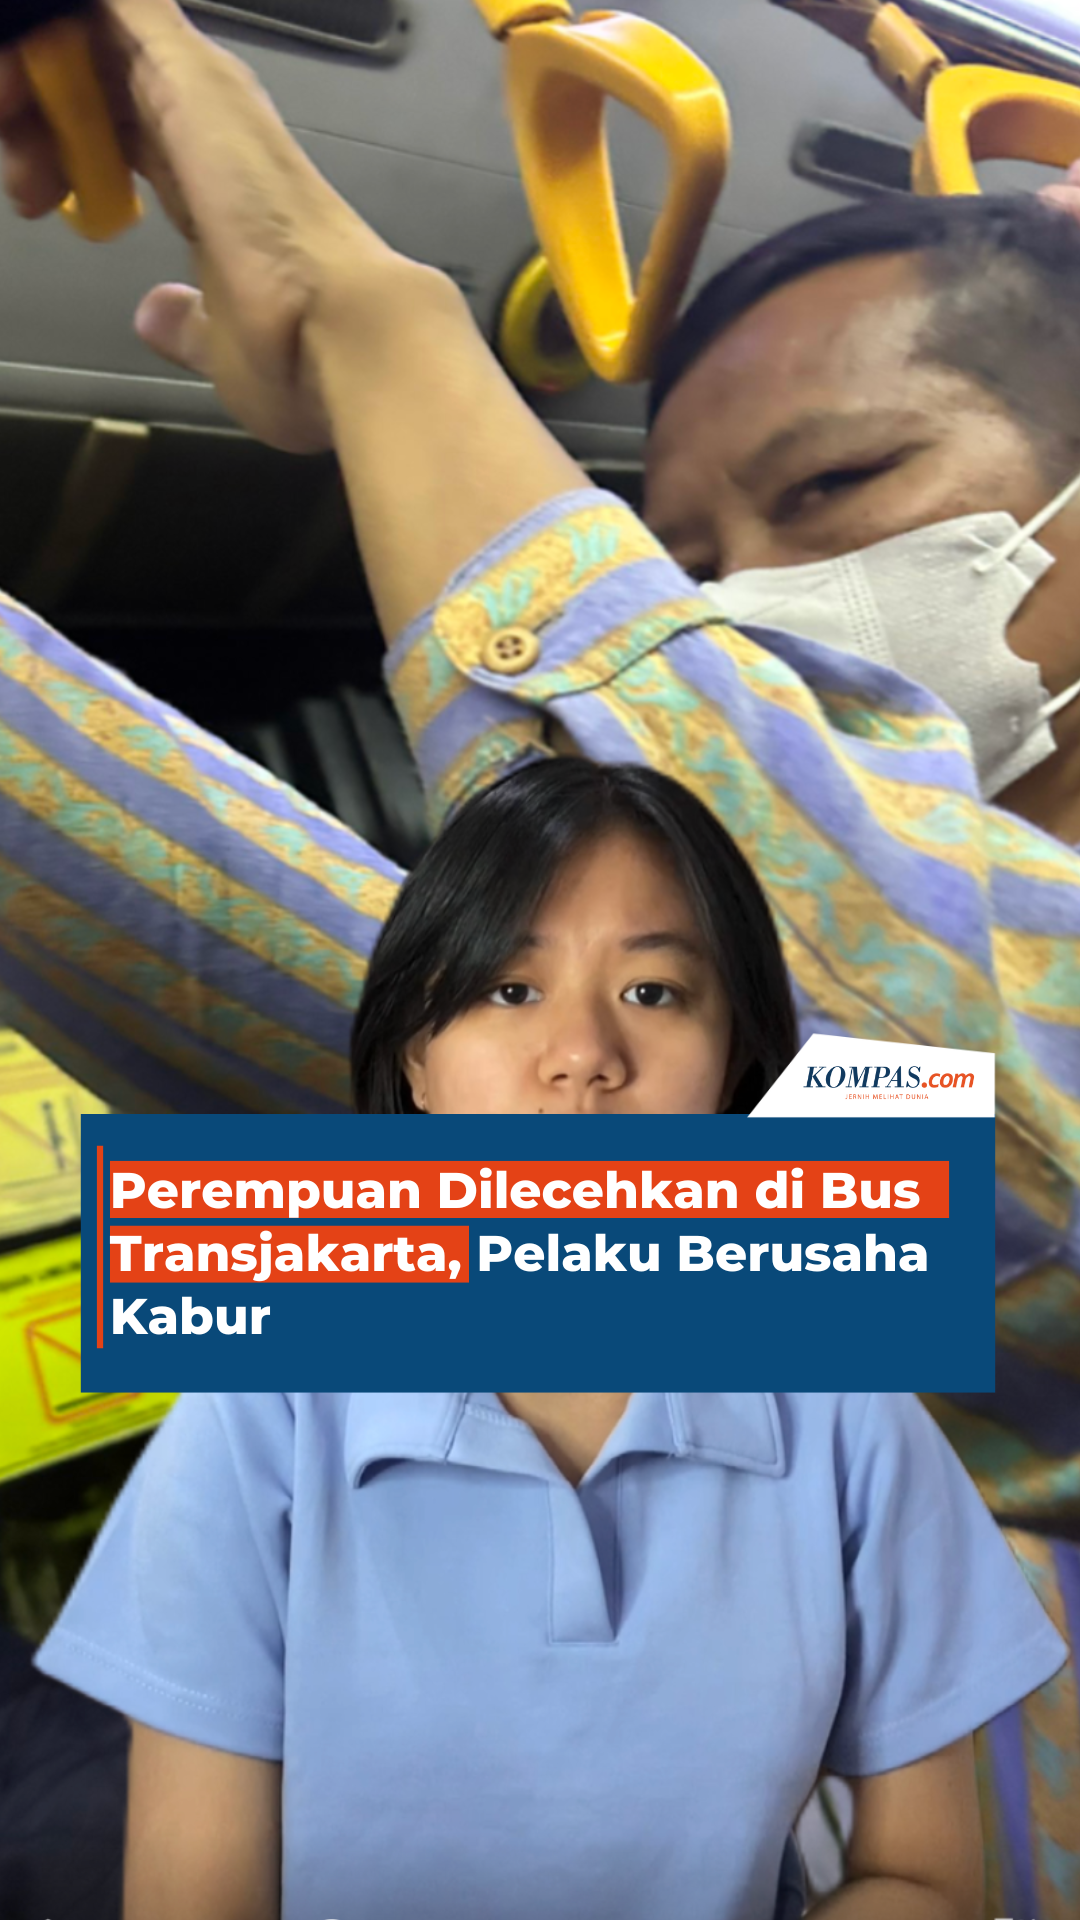 Perempuan Dilecehkan di Bus Transjakarta, Pelaku Berusaha Kabur